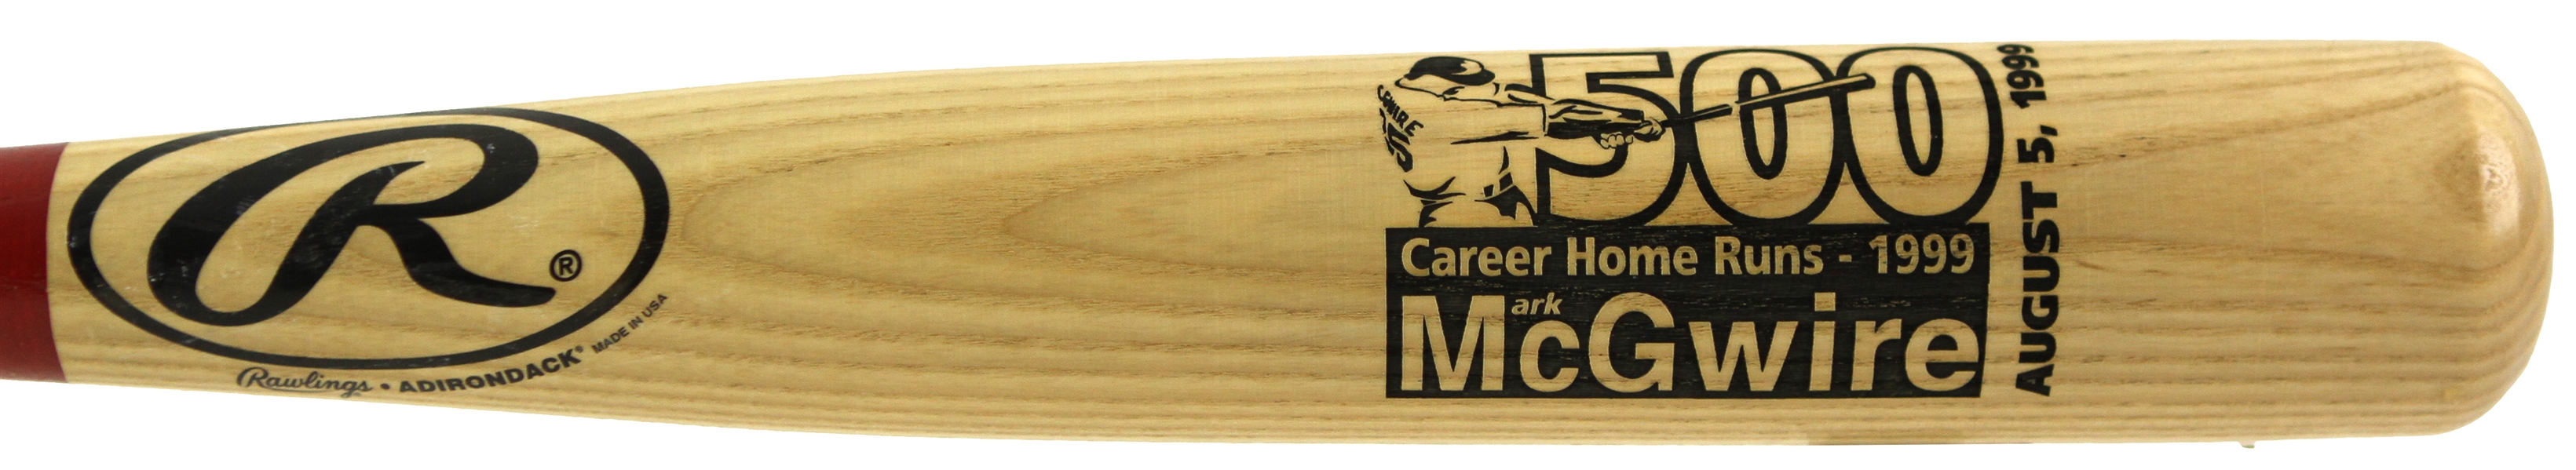 1999 Mark McGwire St. Louis Cardinals Rawlings Adirondack 500th Career Home Run Commemorative Bat 